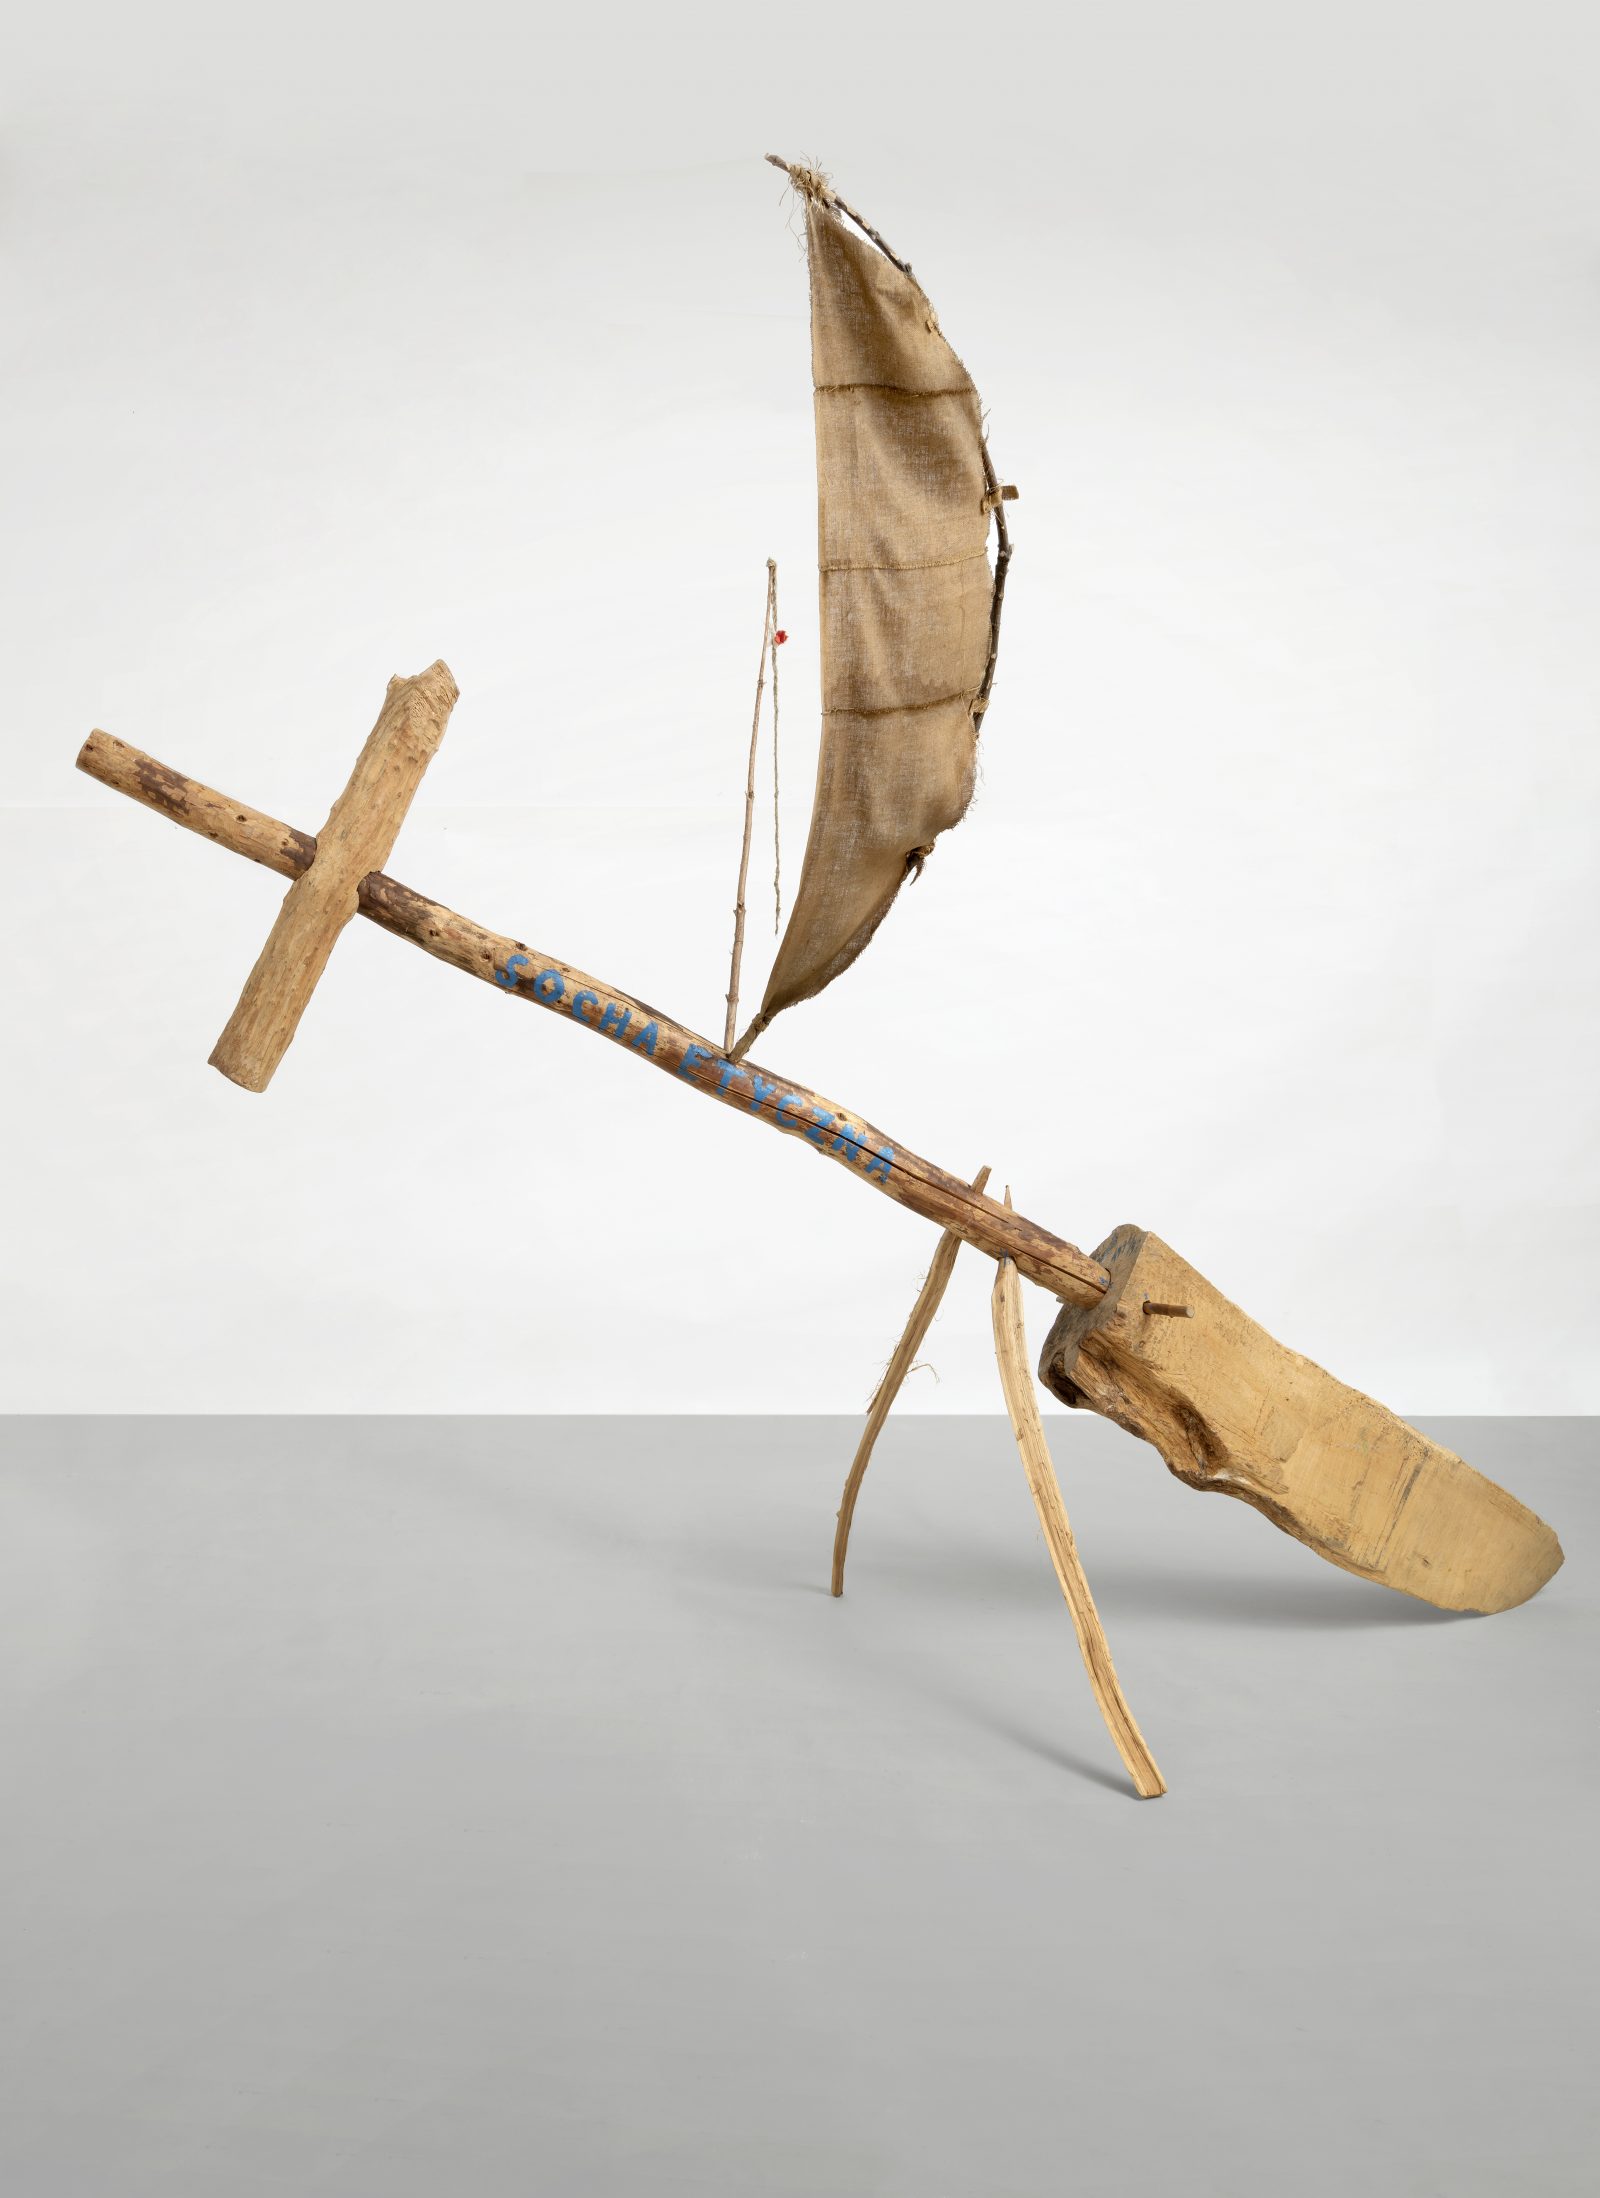 Jerzy Bereś, Ethical Sokha, 1991-1992
wood, rope, fabric, acrylic
300 × 190 × 390 cm